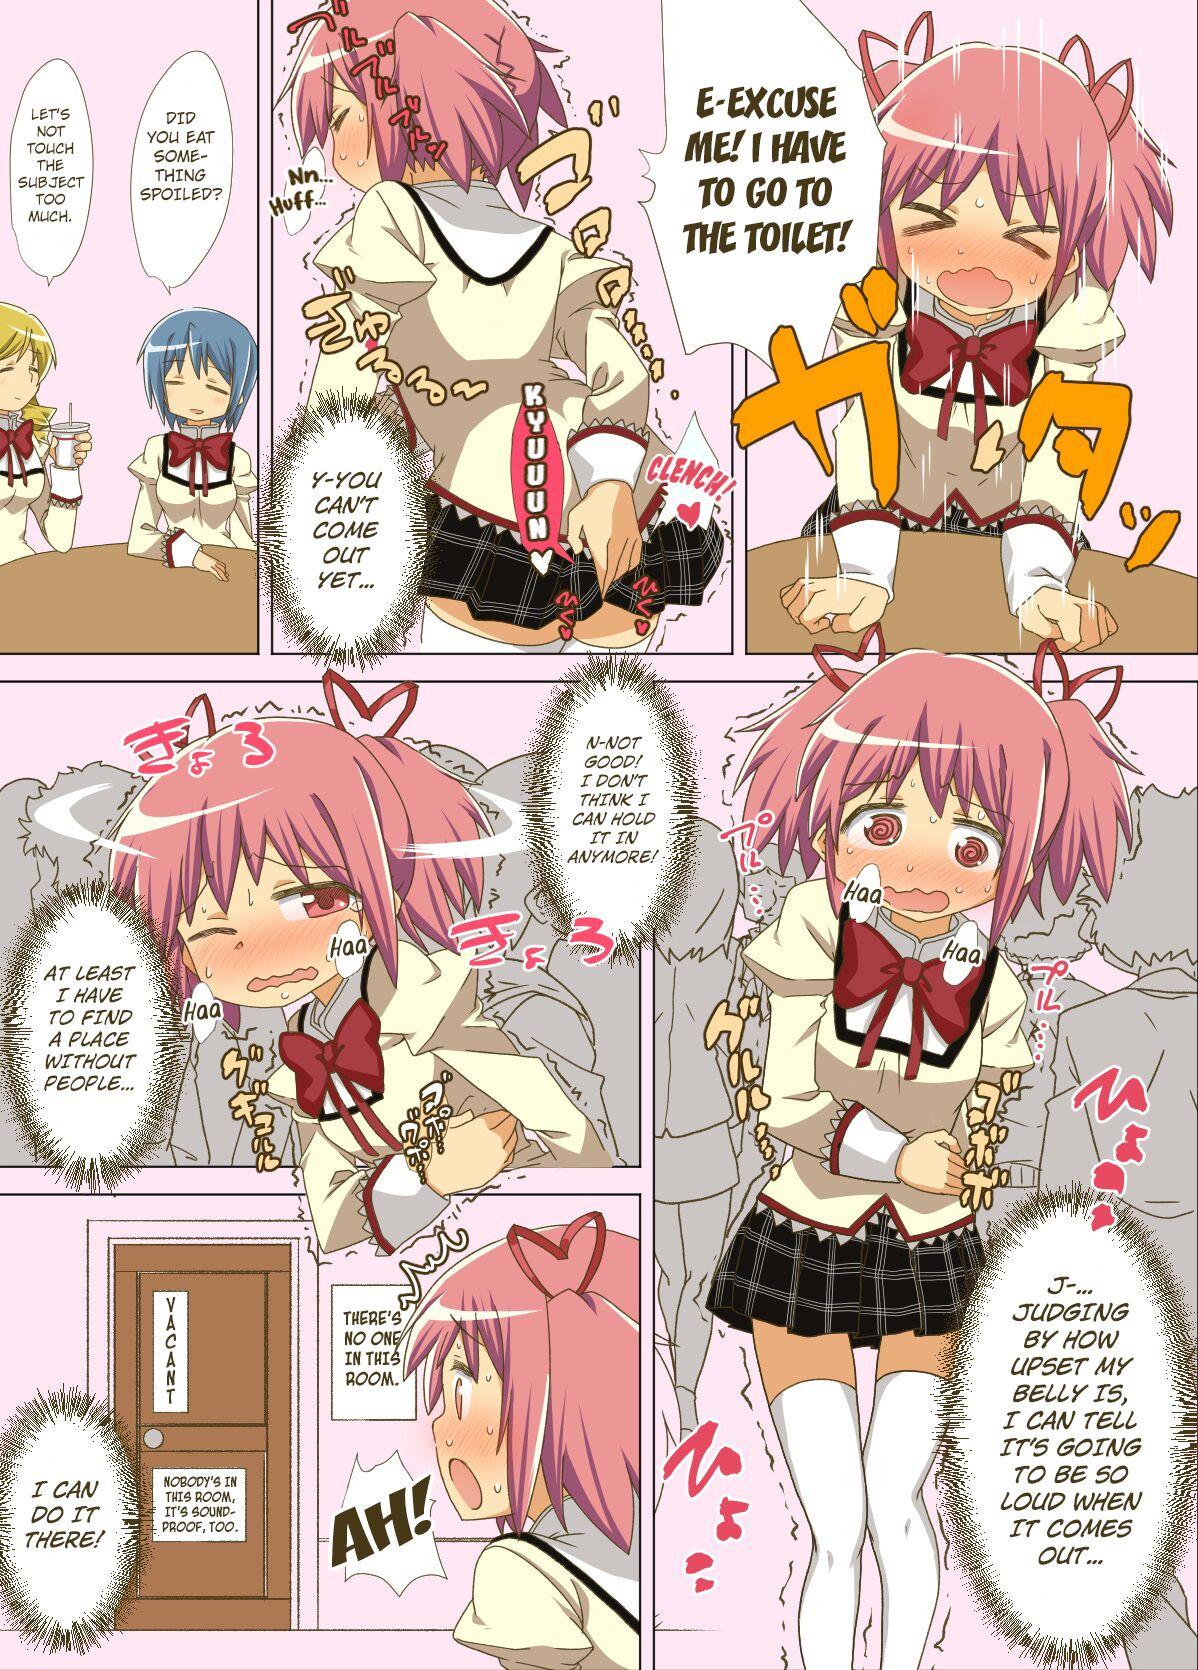 Massive Madohomu Gas Expulsion Manga - Puella magi madoka magica Lesbian - Picture 3